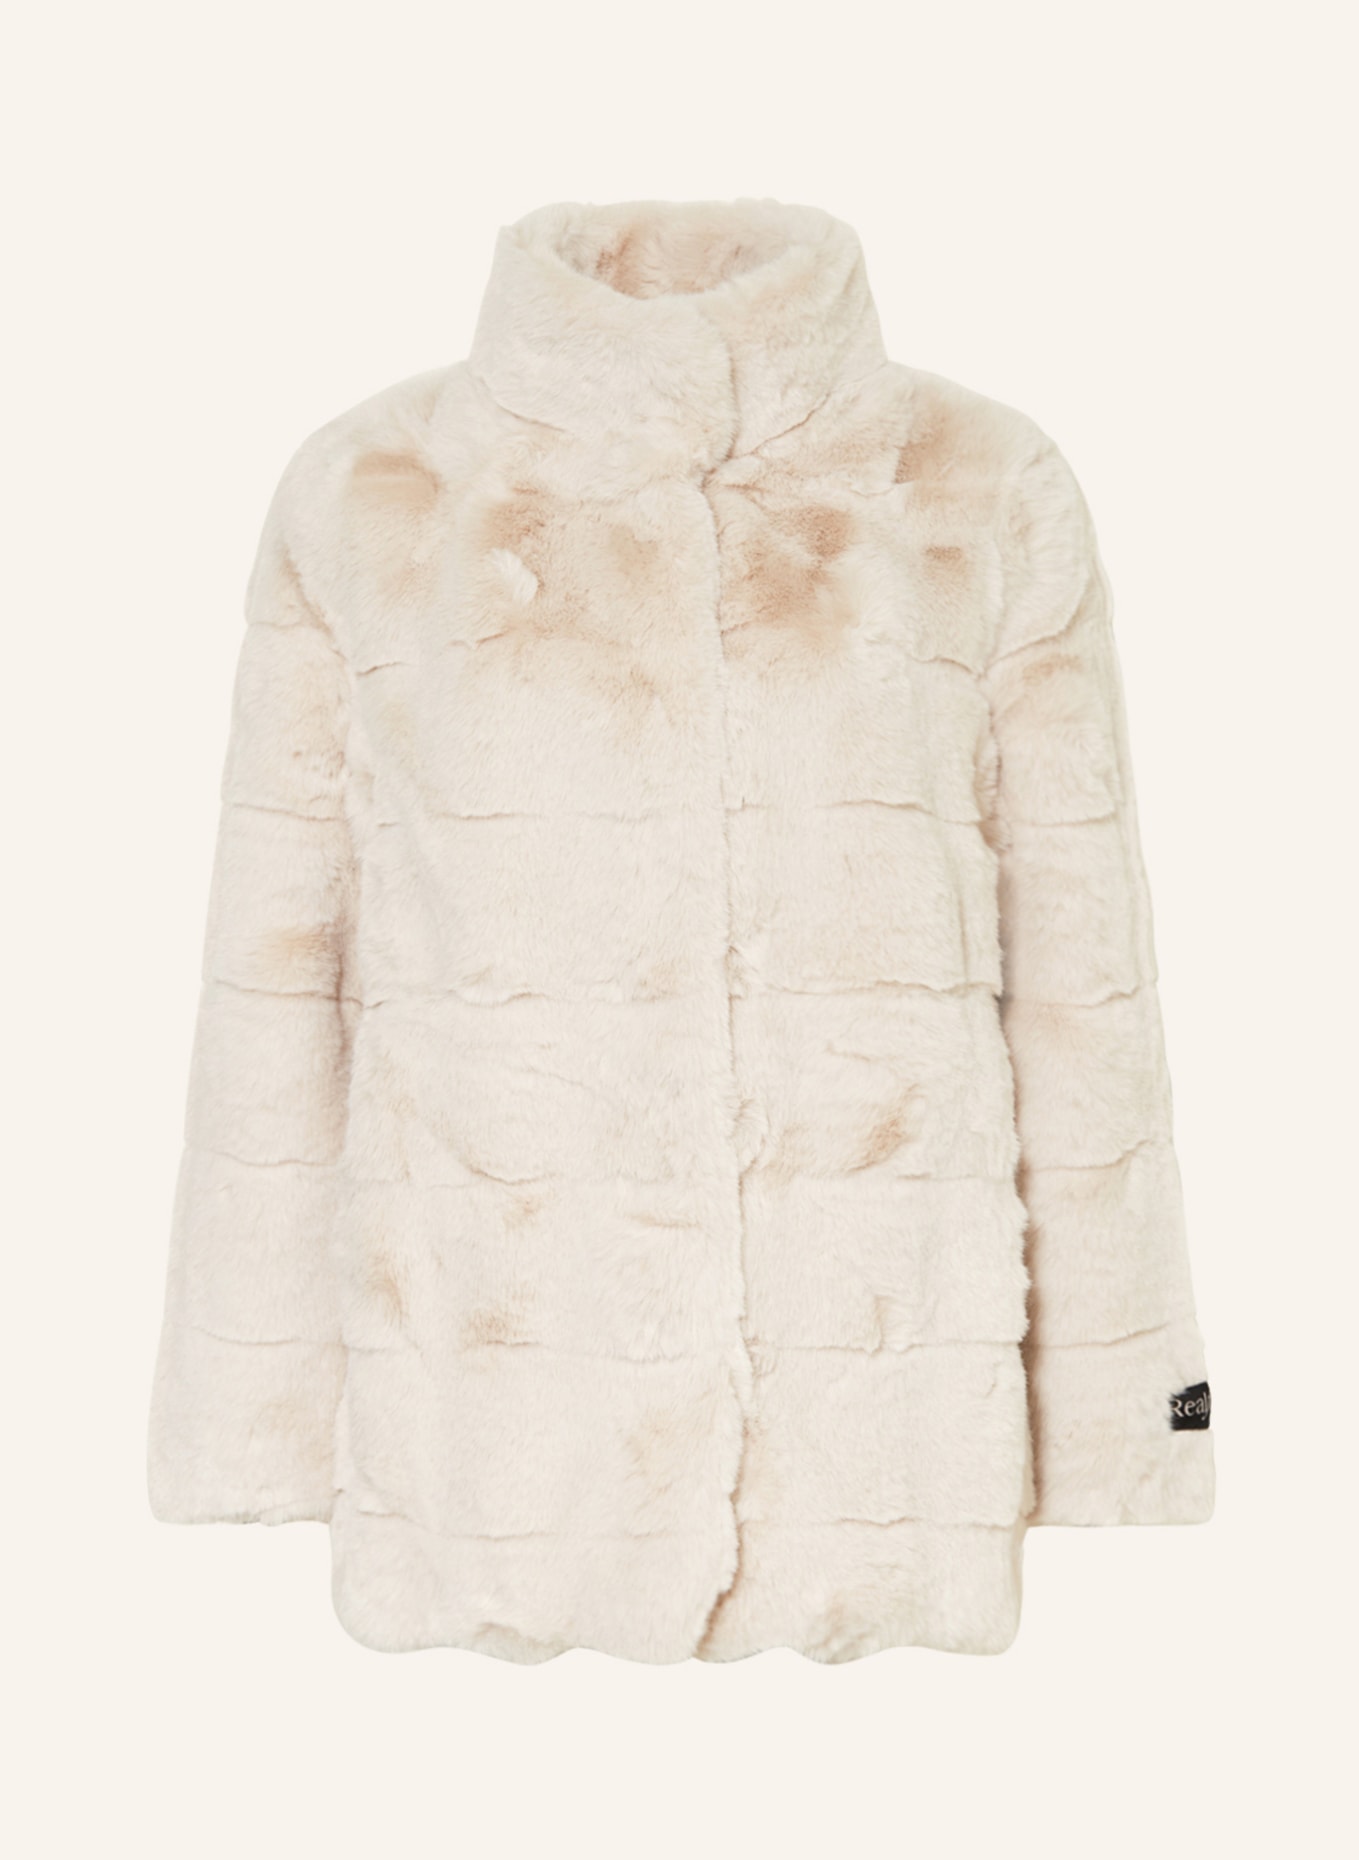 RINO & PELLE Faux fur jacket, Color: BEIGE (Image 1)